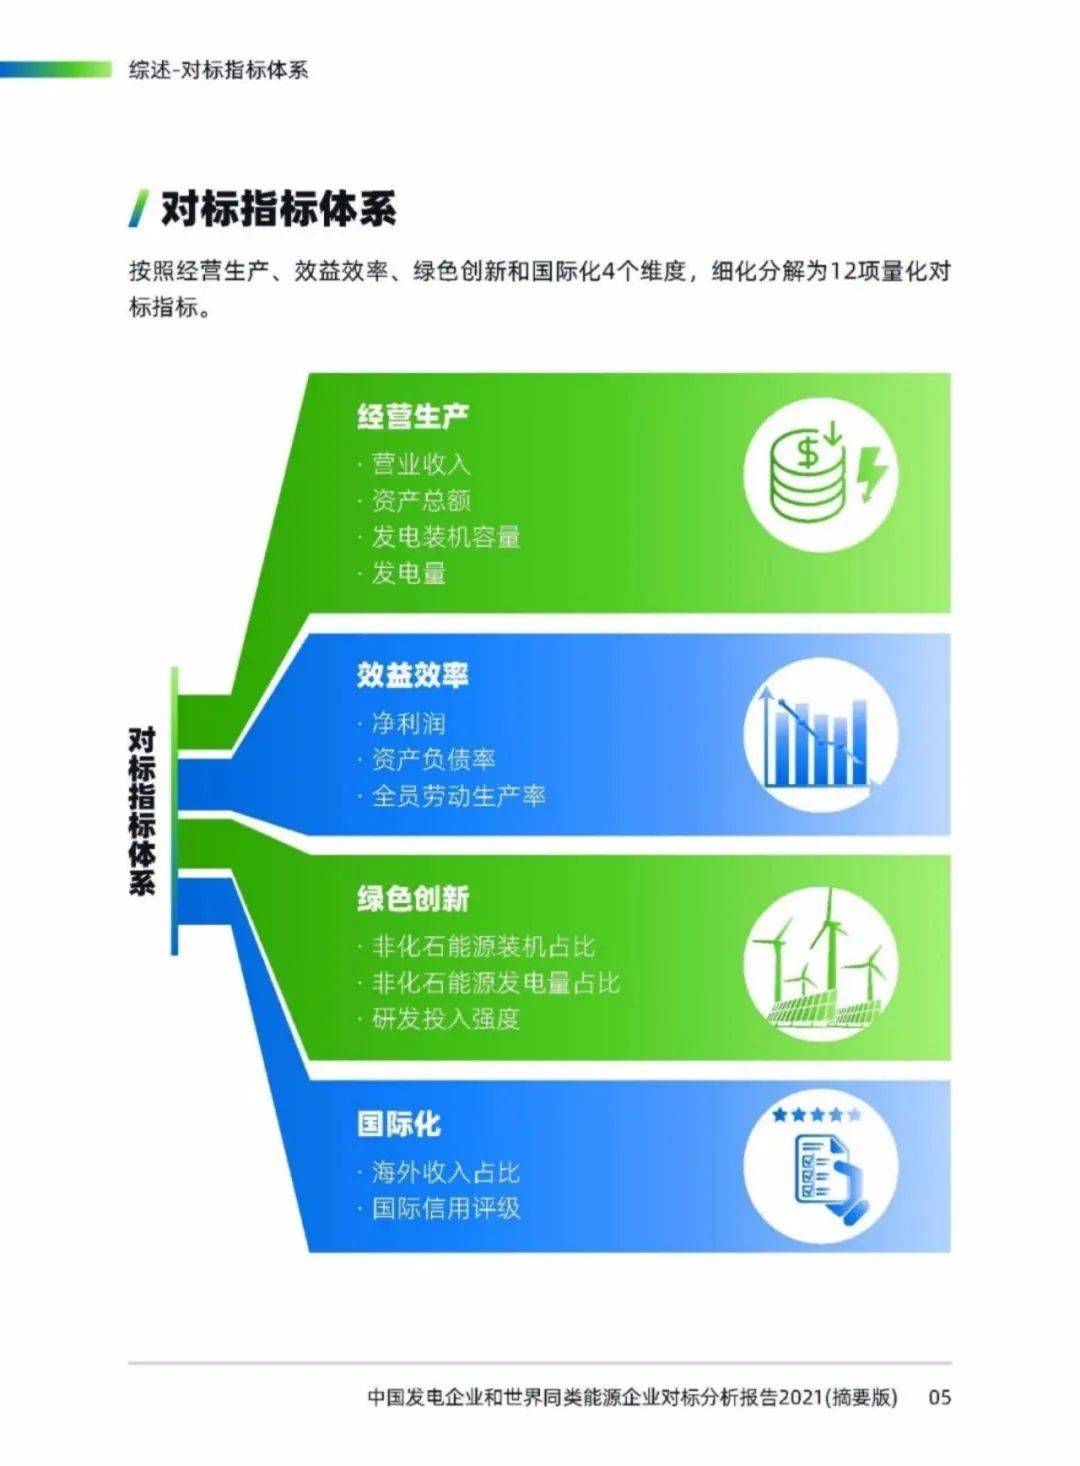 中国11家发电集团和全球10家电力企业对标分析附文件